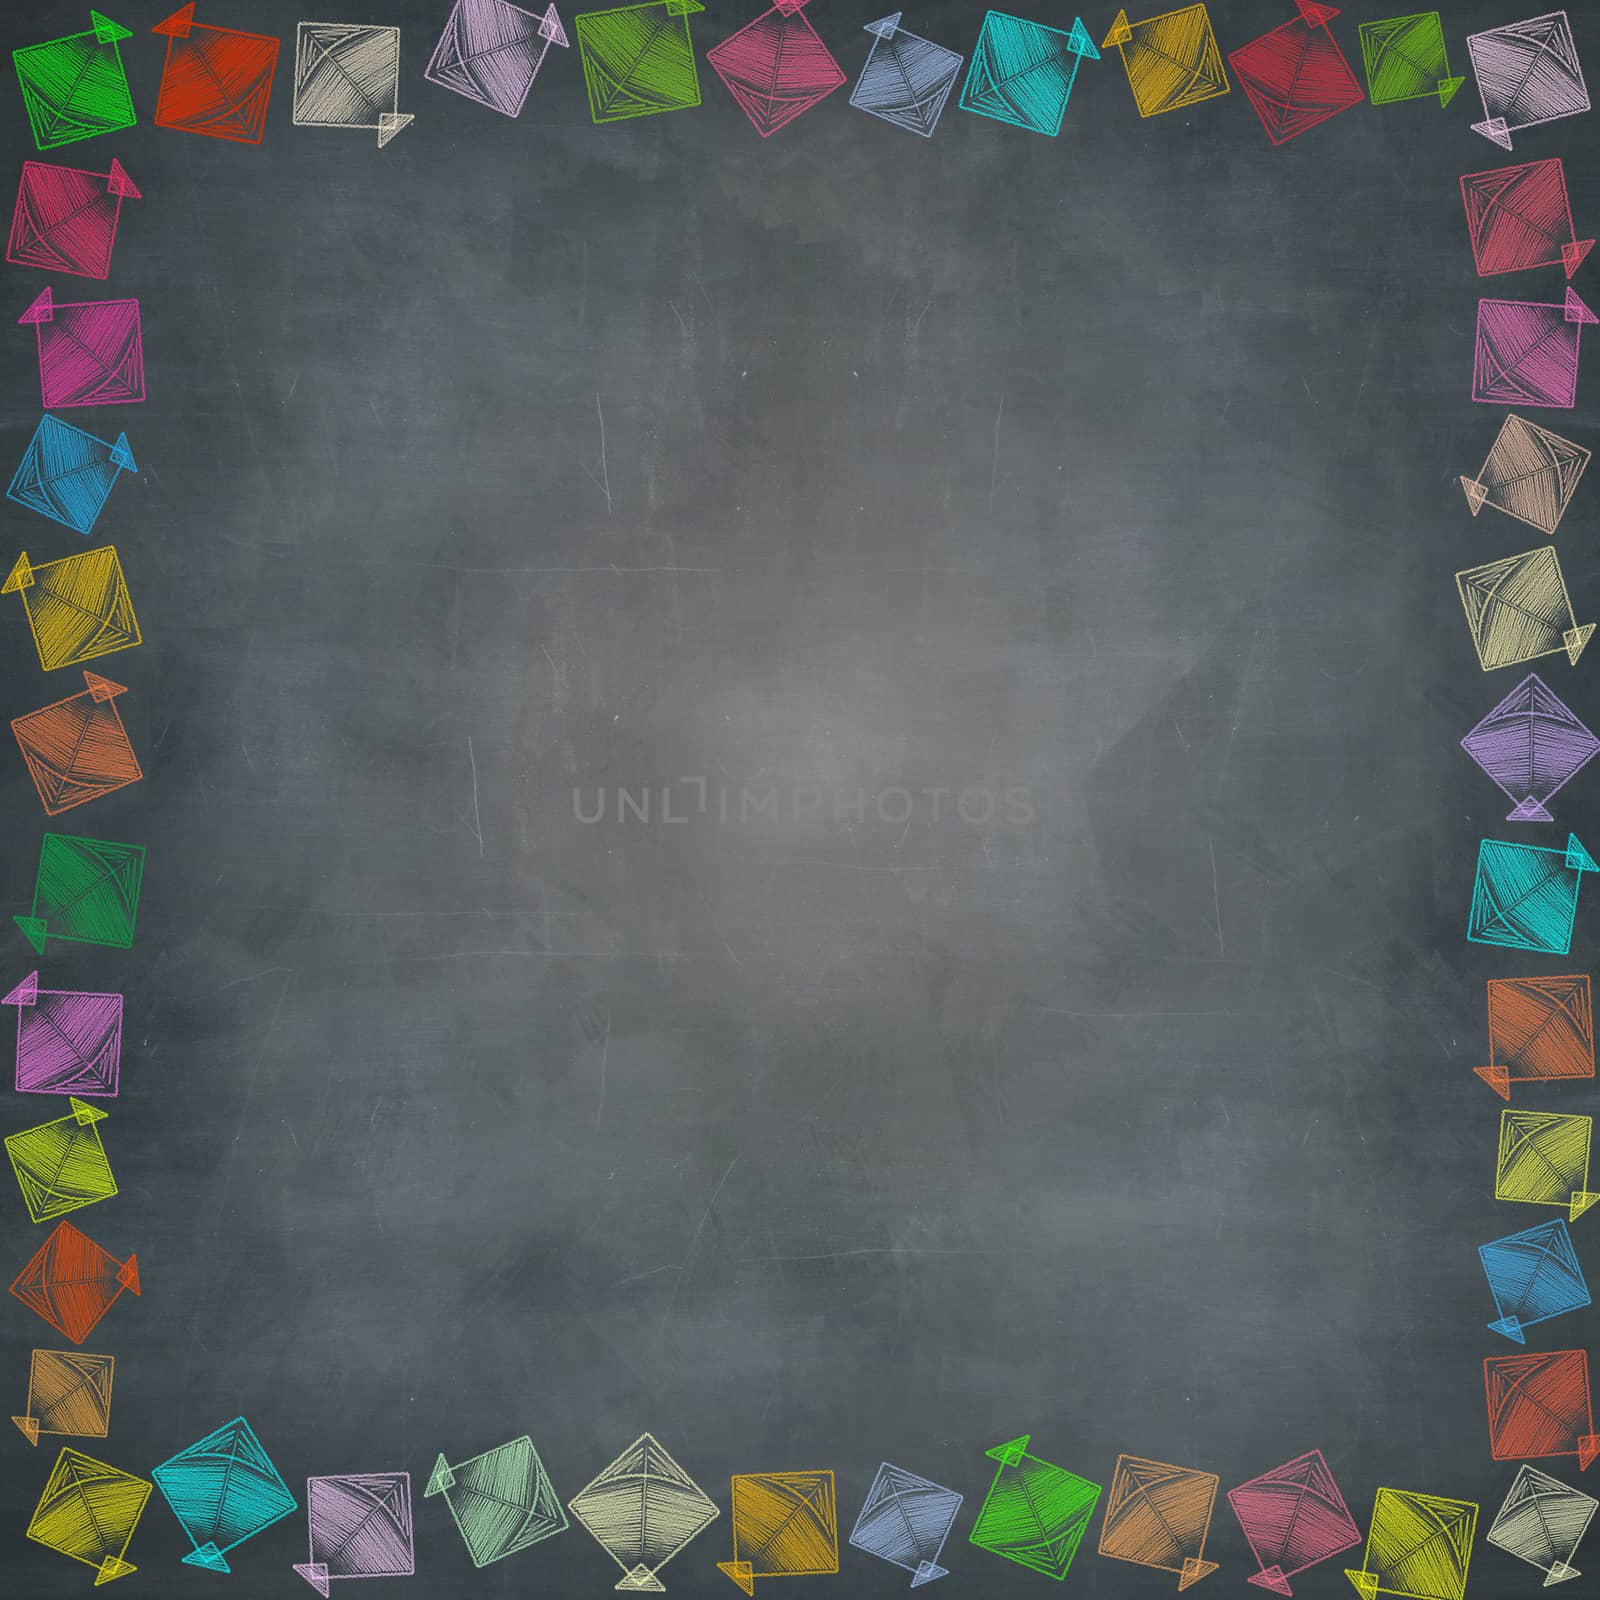 multiple kites border on chalkboard